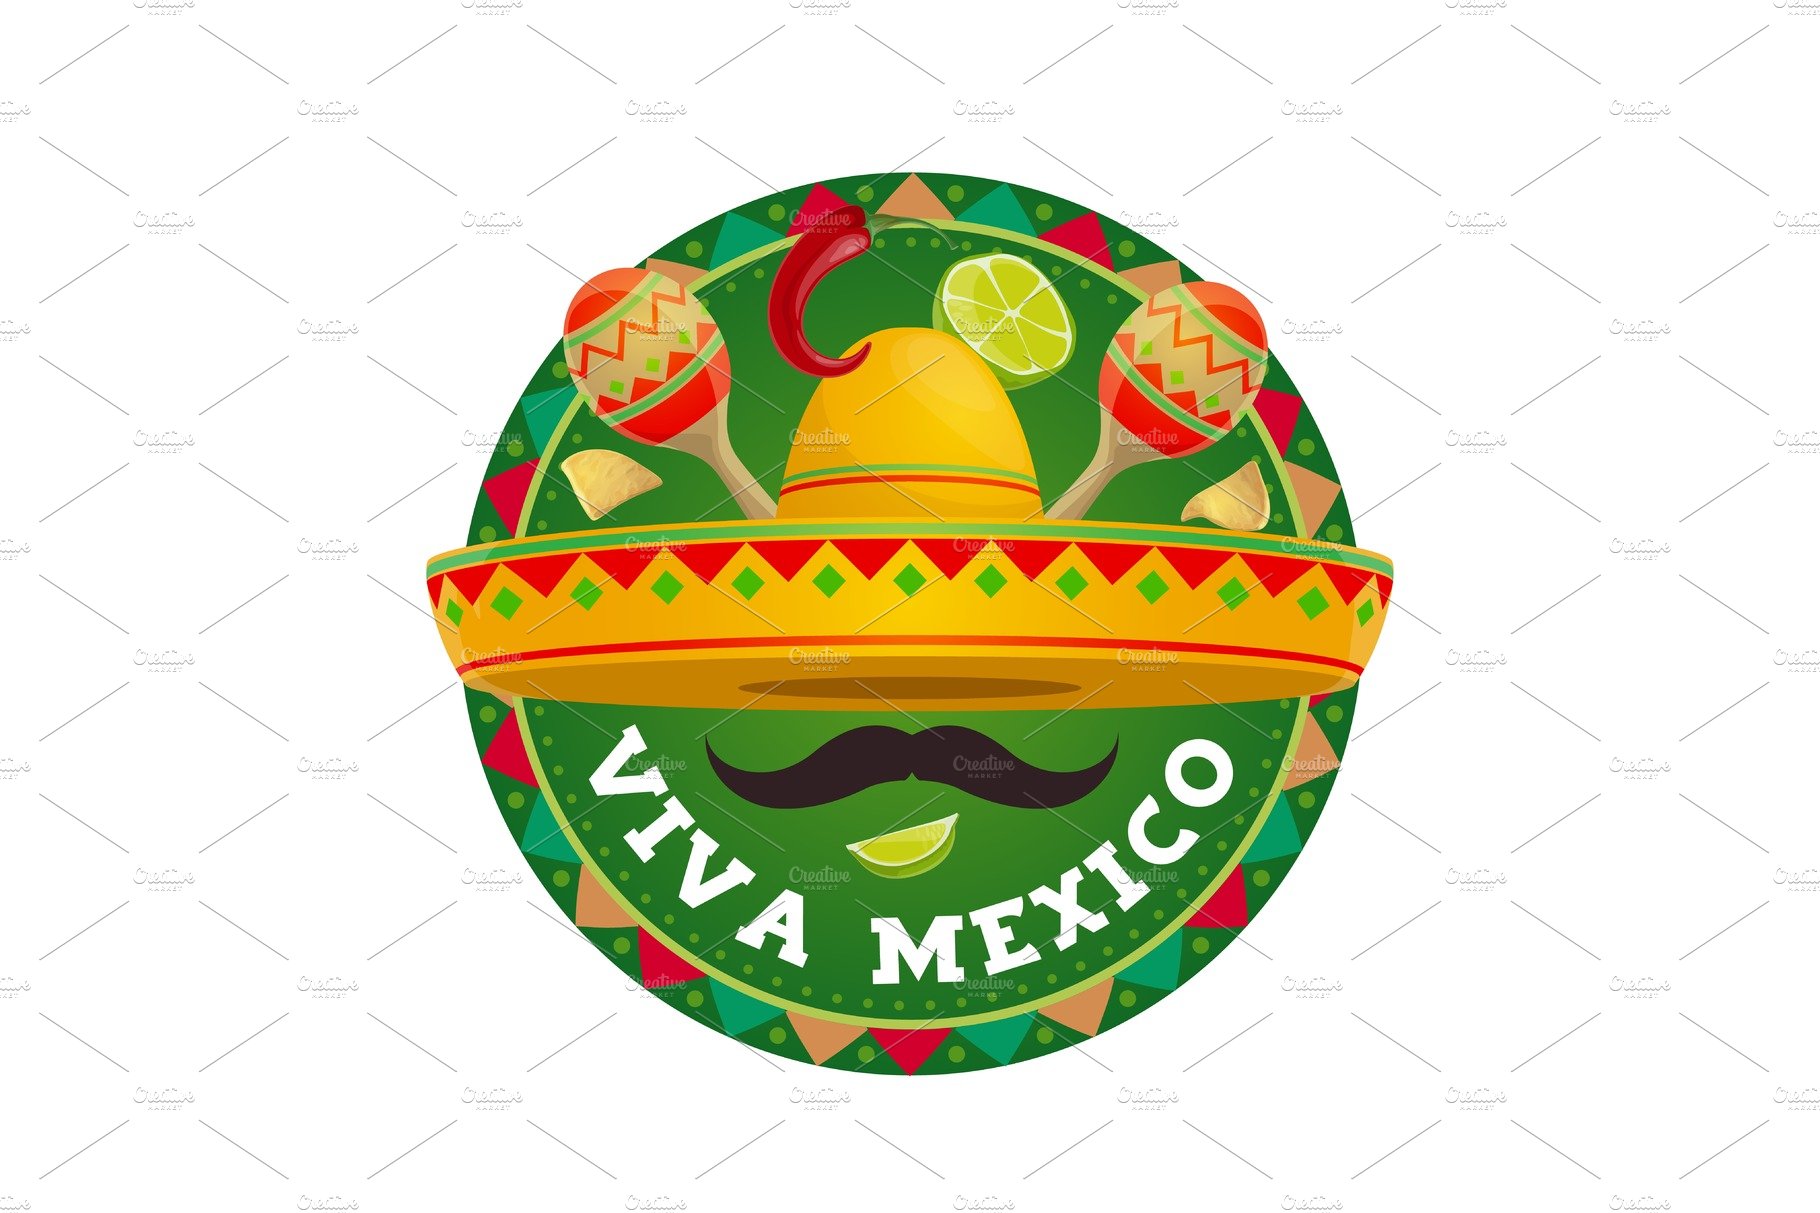 Viva Mexico vector icon cover image.